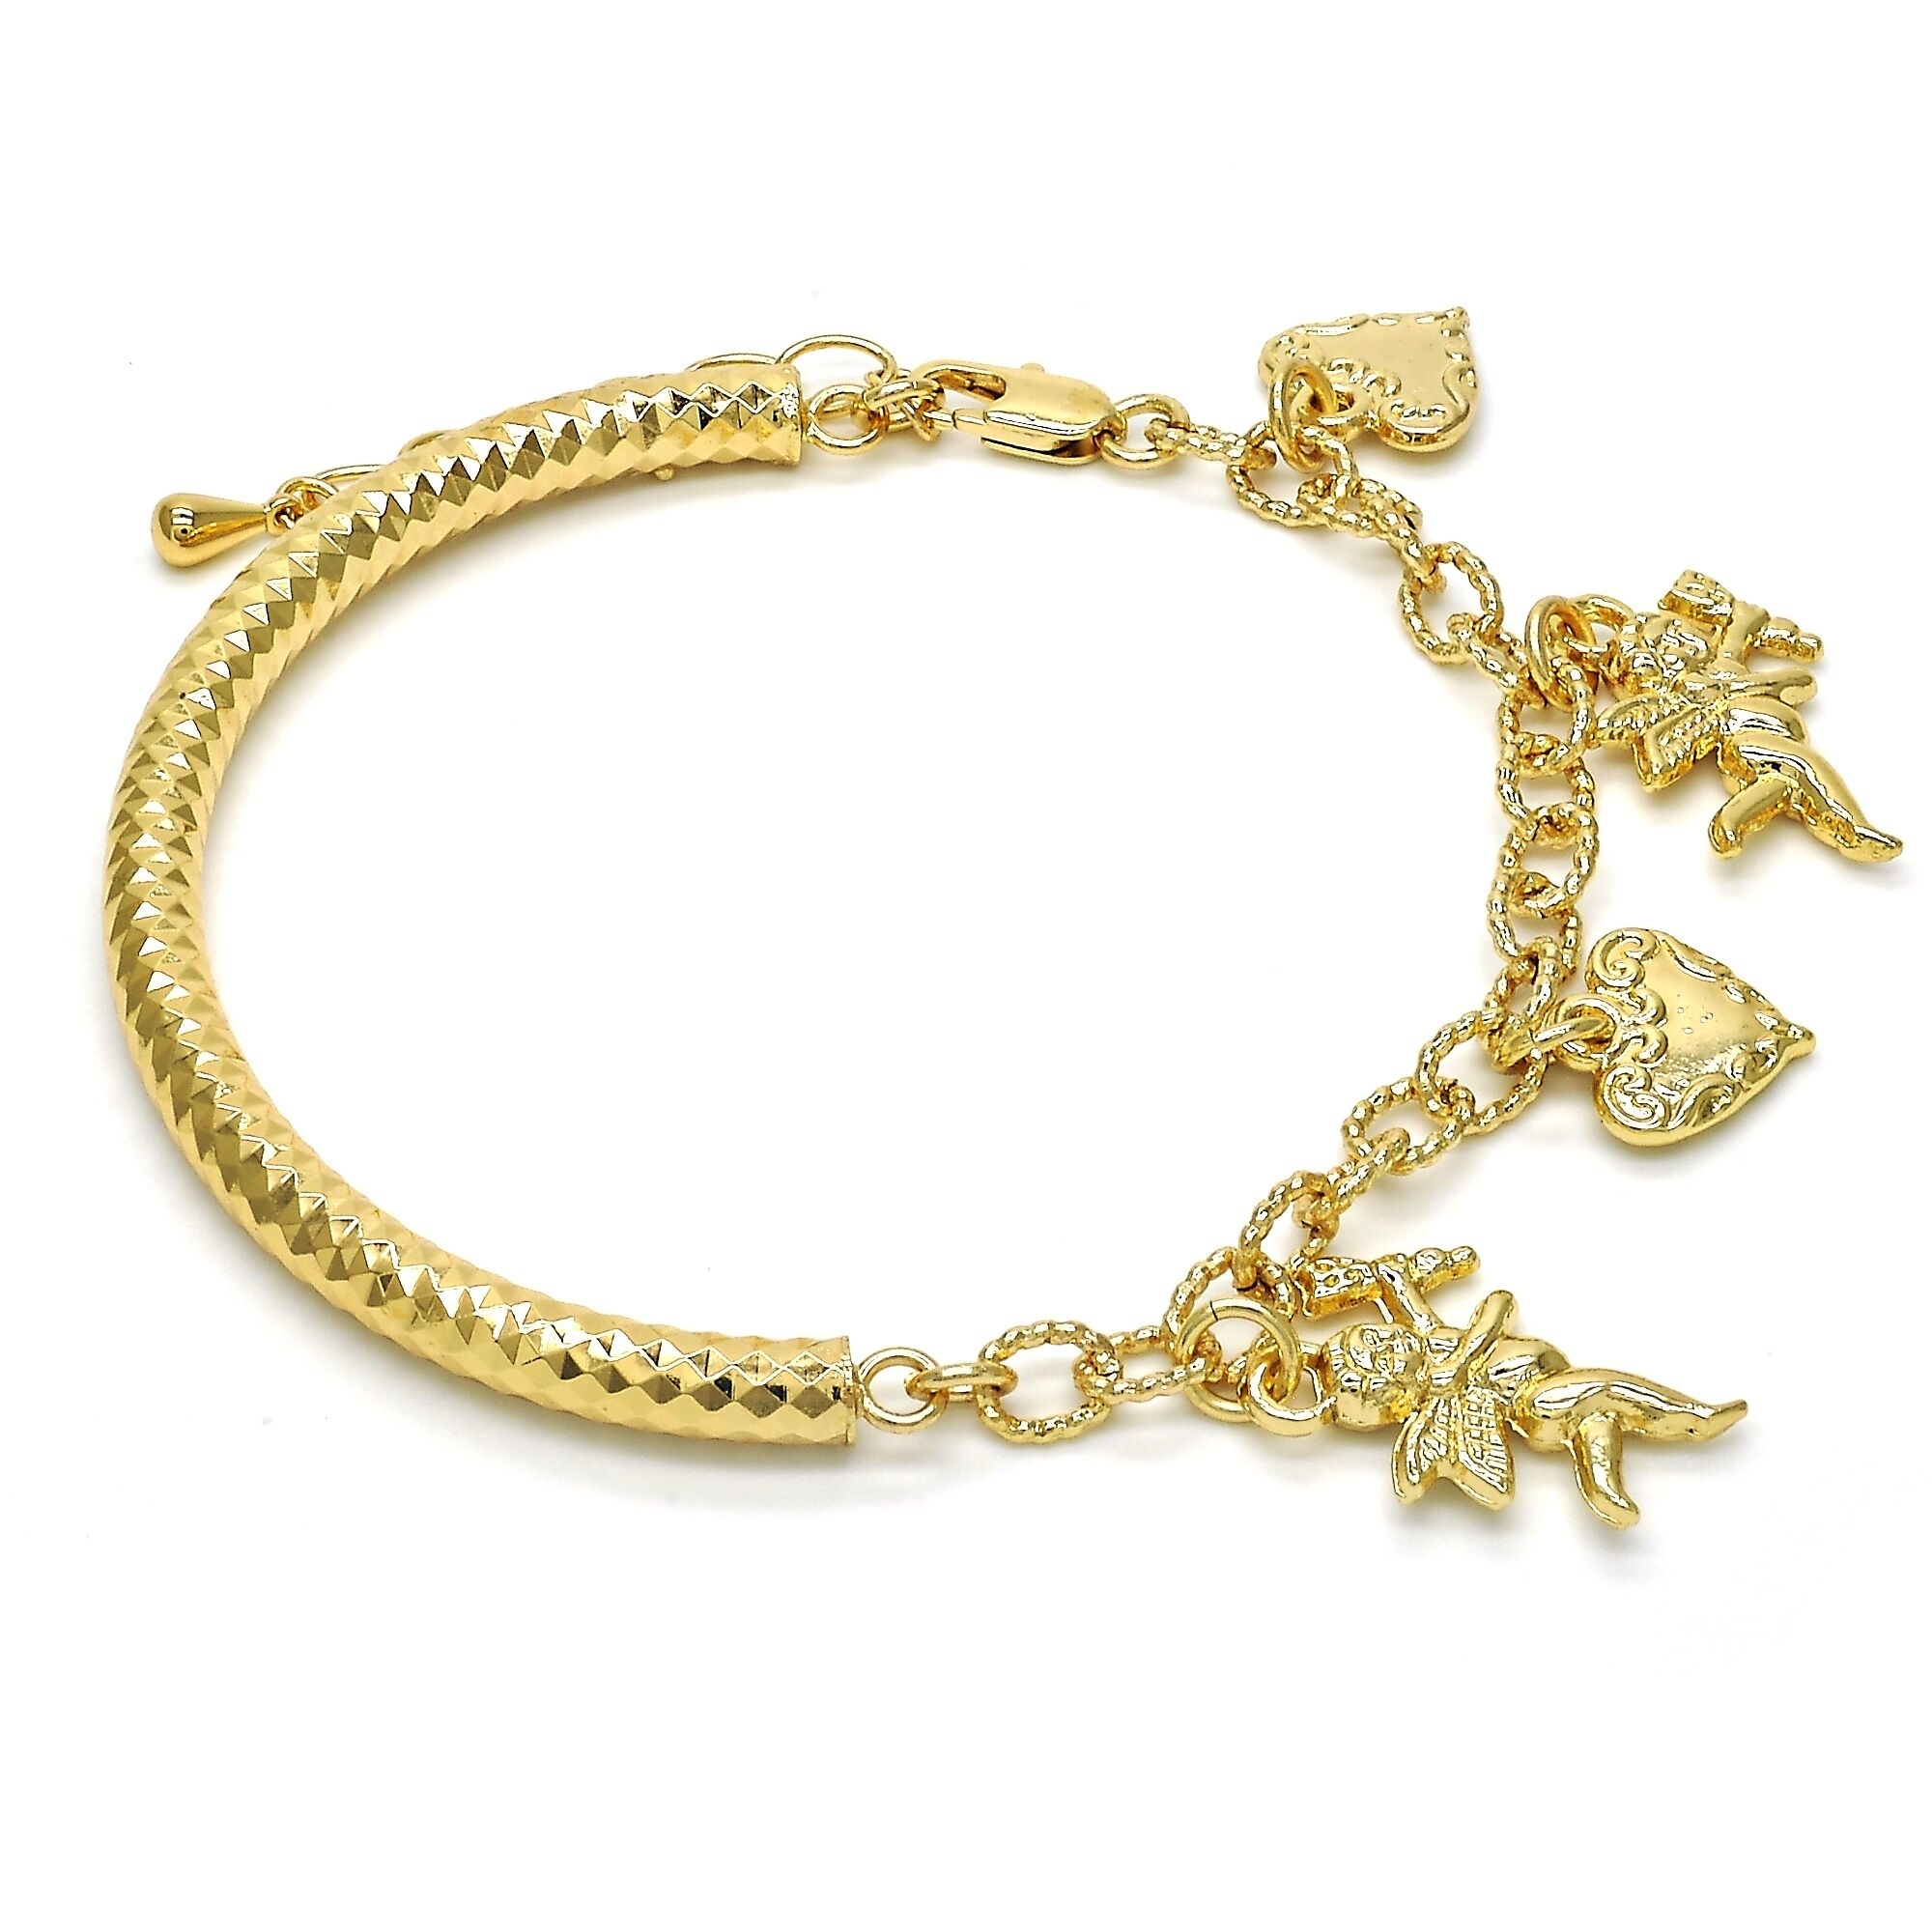 Gold Filled Charm Bracelet, Angel And Heart Design, Golden Tone